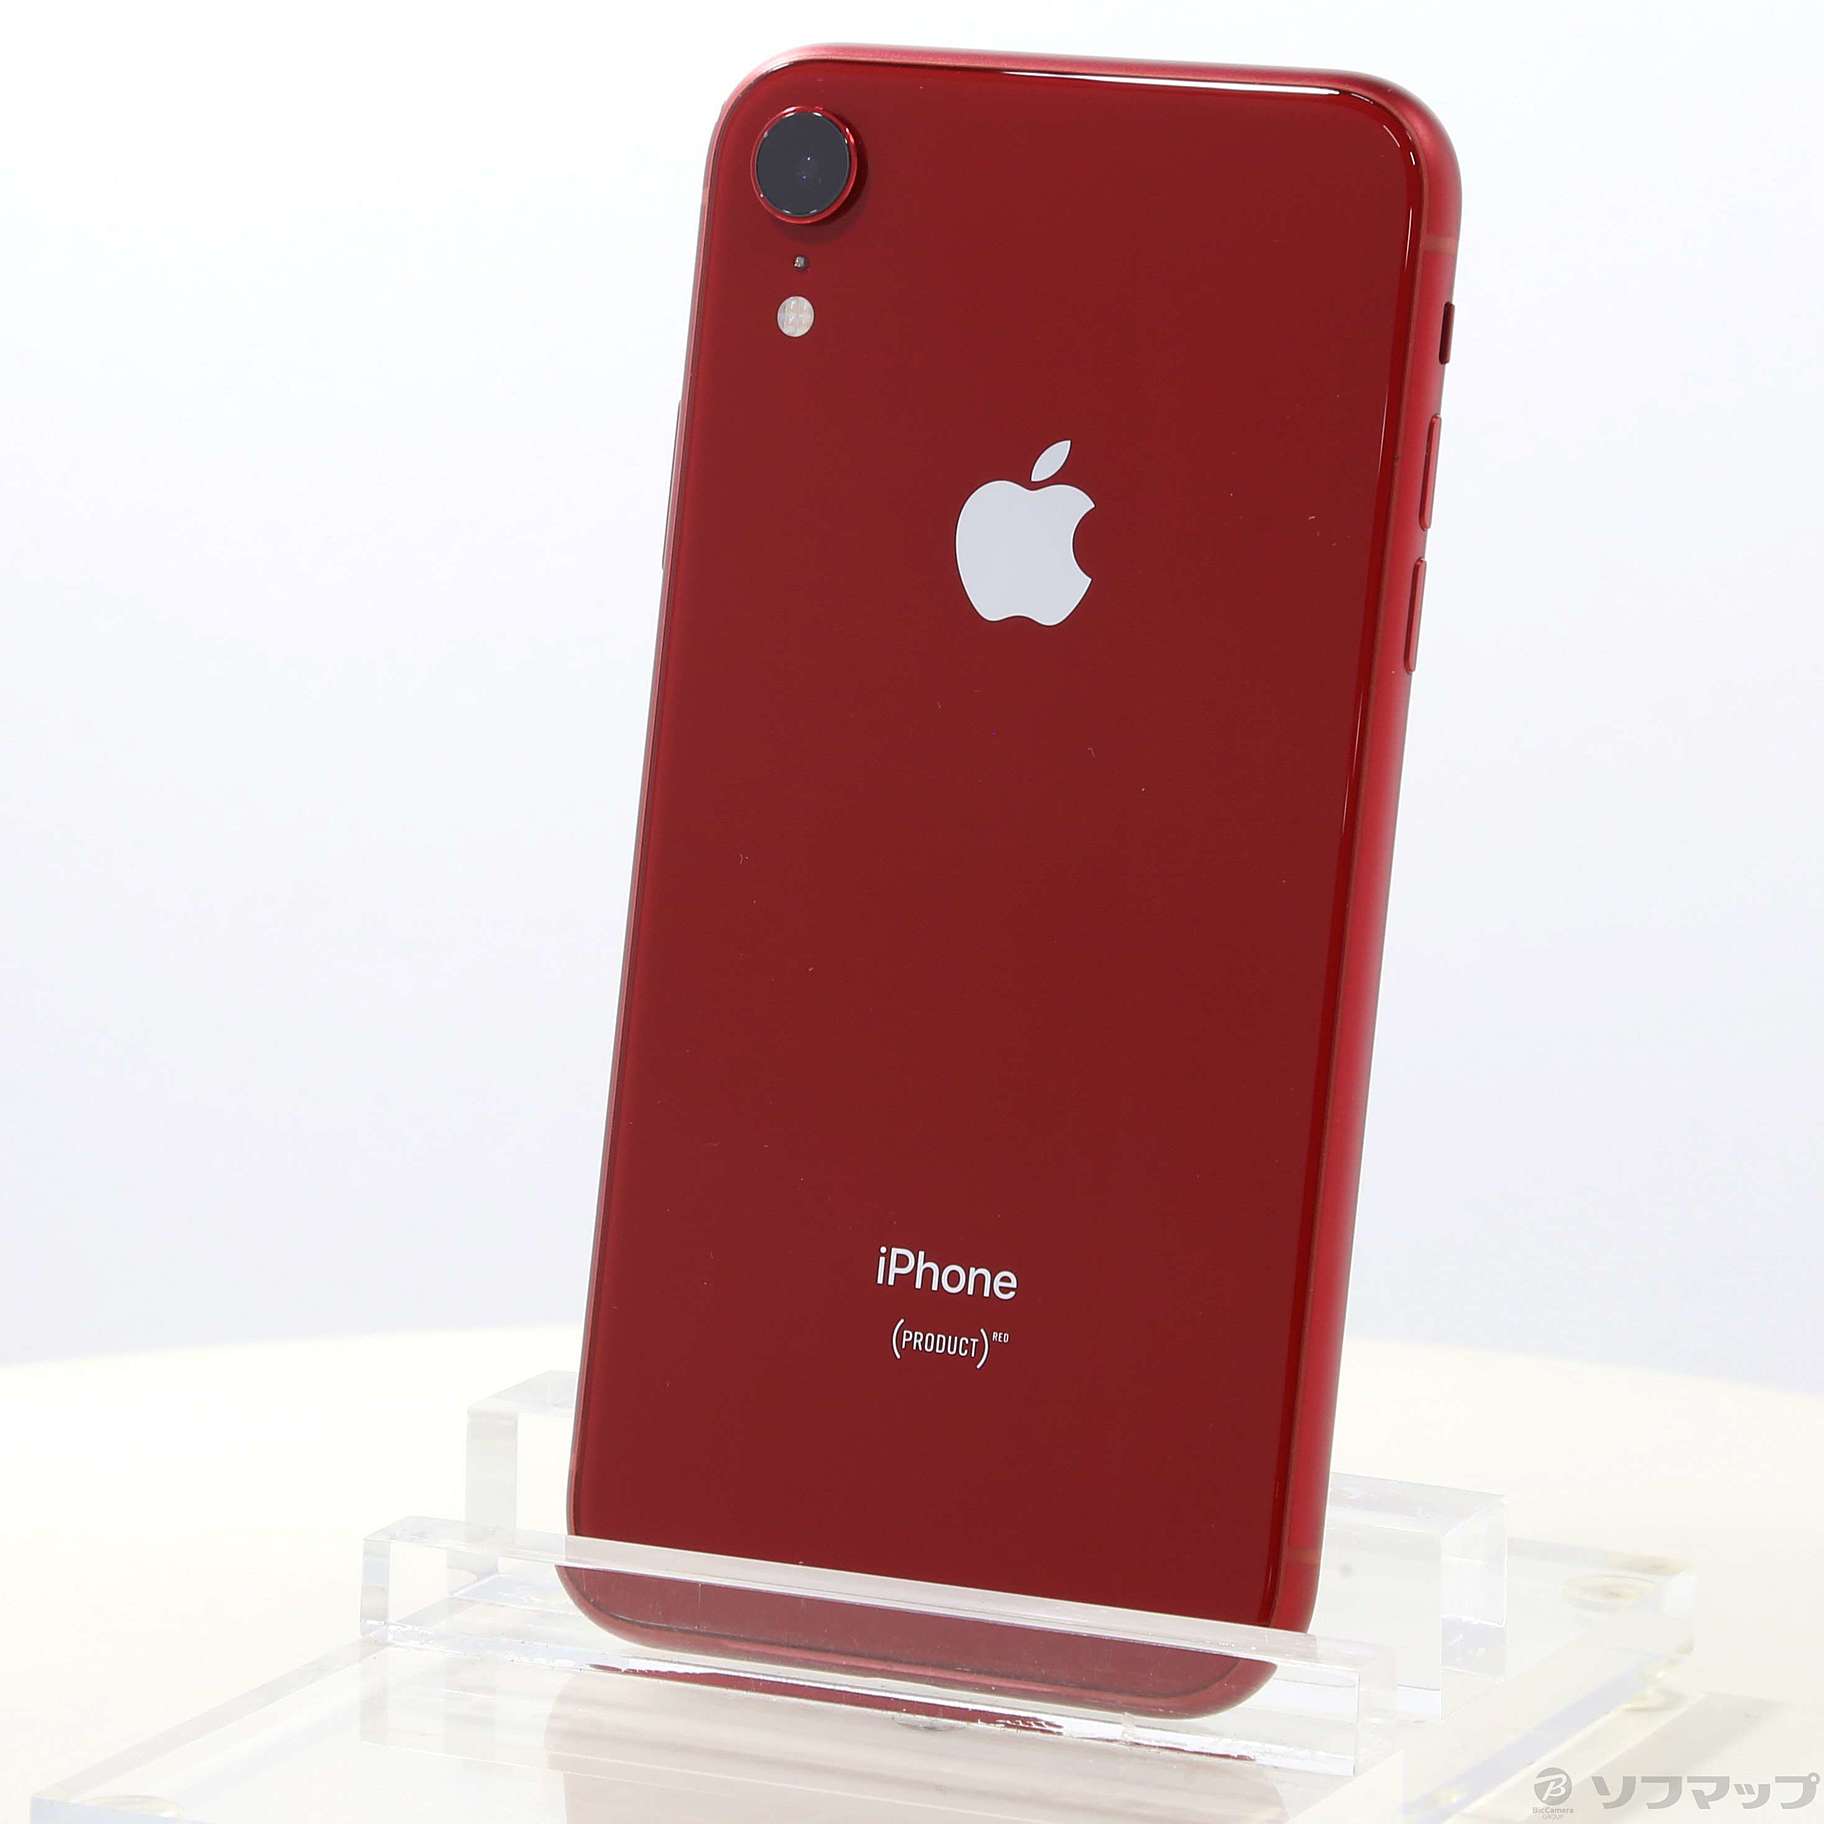 【好評お得】iPhoneXR 128GB レッド 新品未使用品 スマートフォン本体